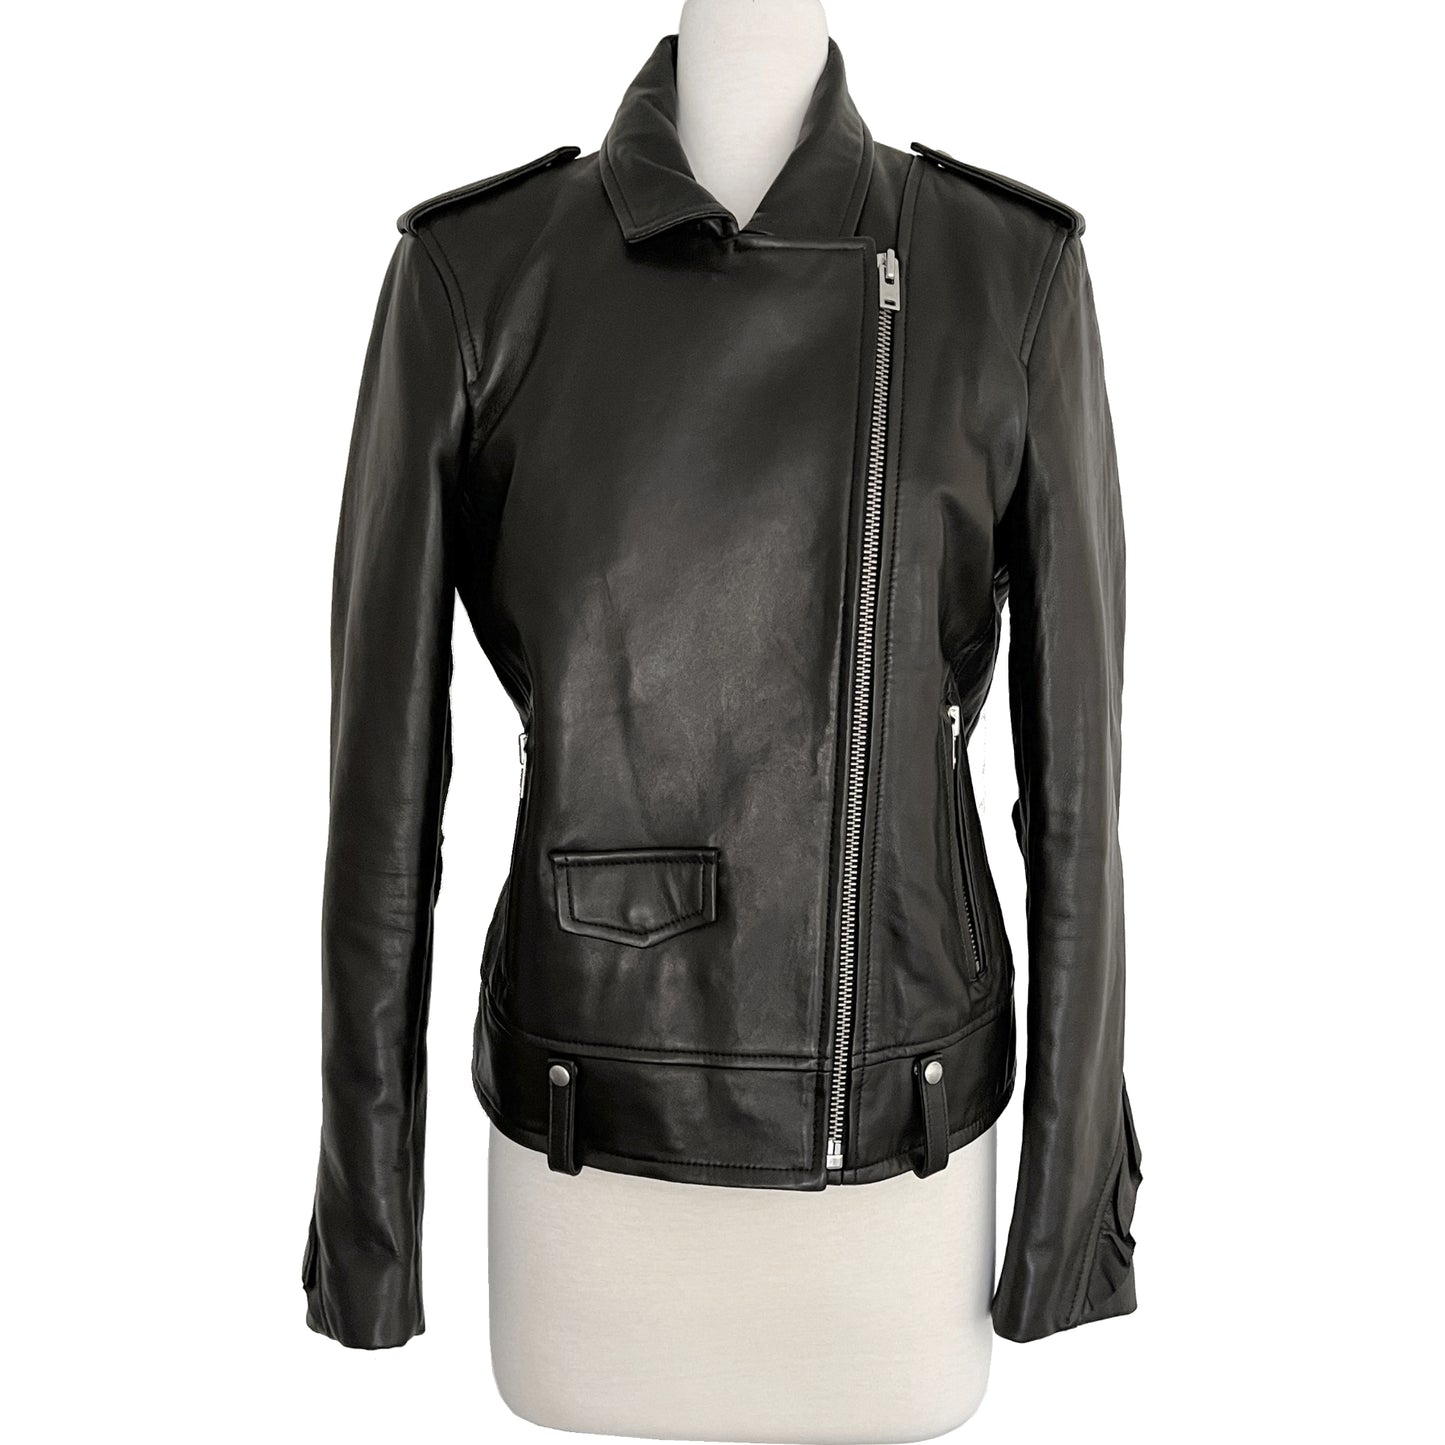 IRO Dumont Motorcycle Black Leather Jacket Size US 8